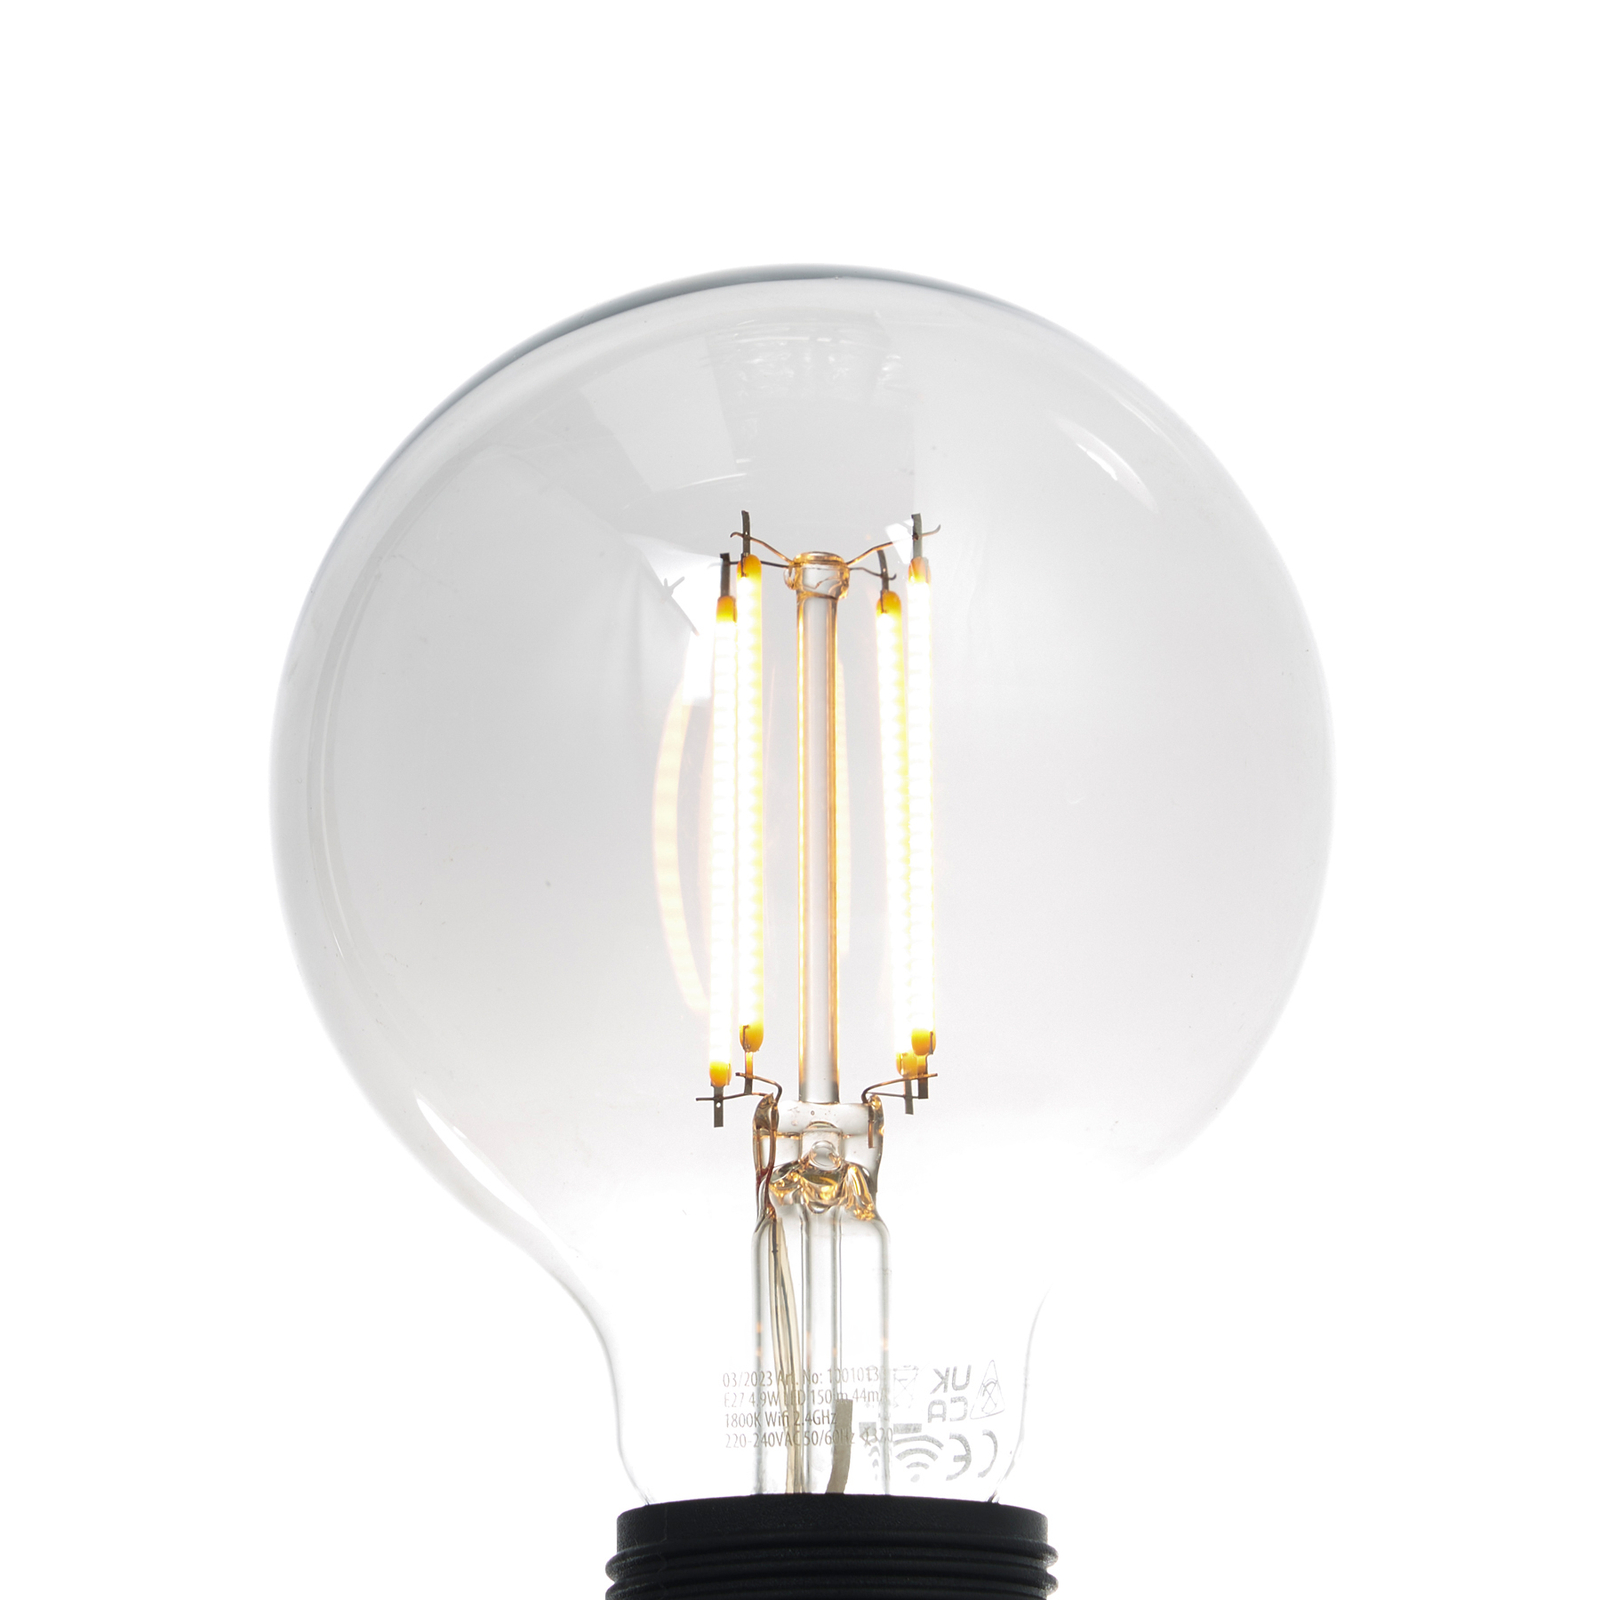 LUUMR Smart LED-Globelampe E27 rauchgrau 4,9W Tuya WLAN